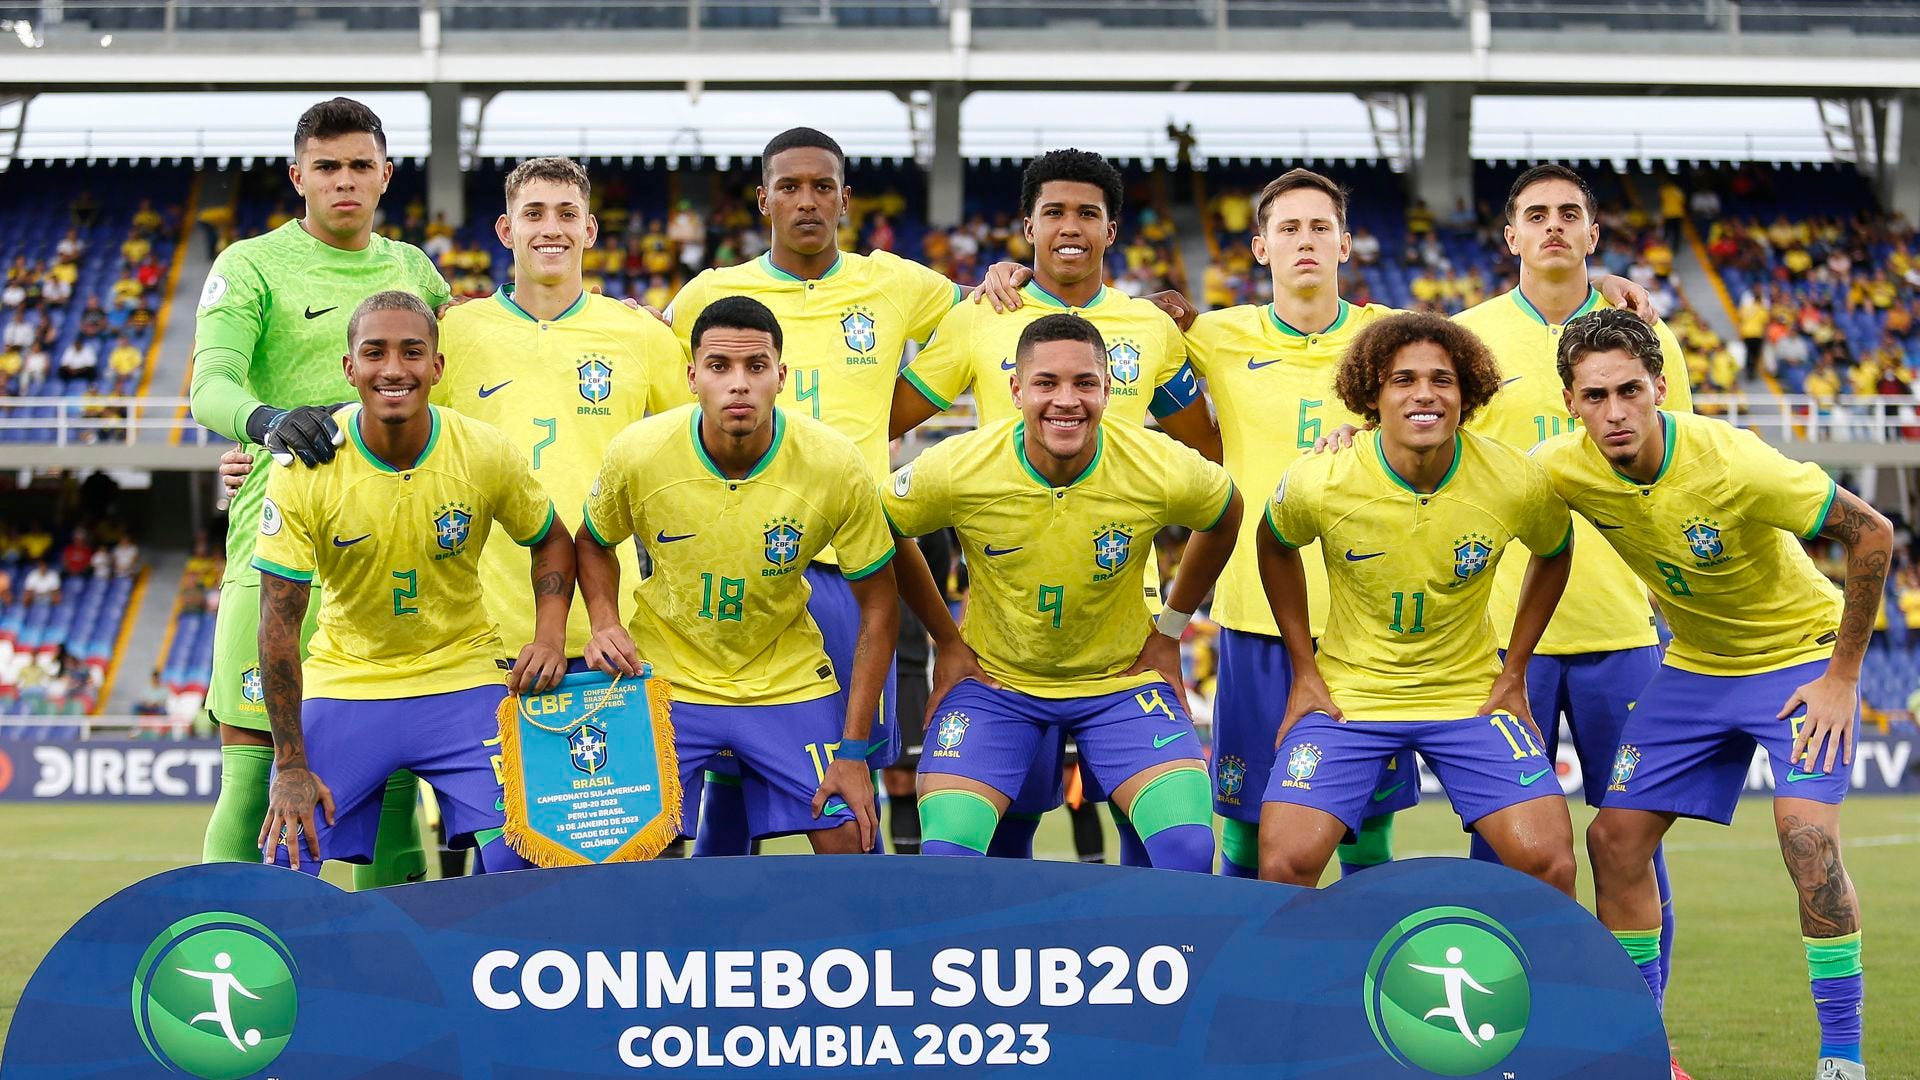 Jogos das Quartas de Final do Mundial Sub-20 - CONMEBOL